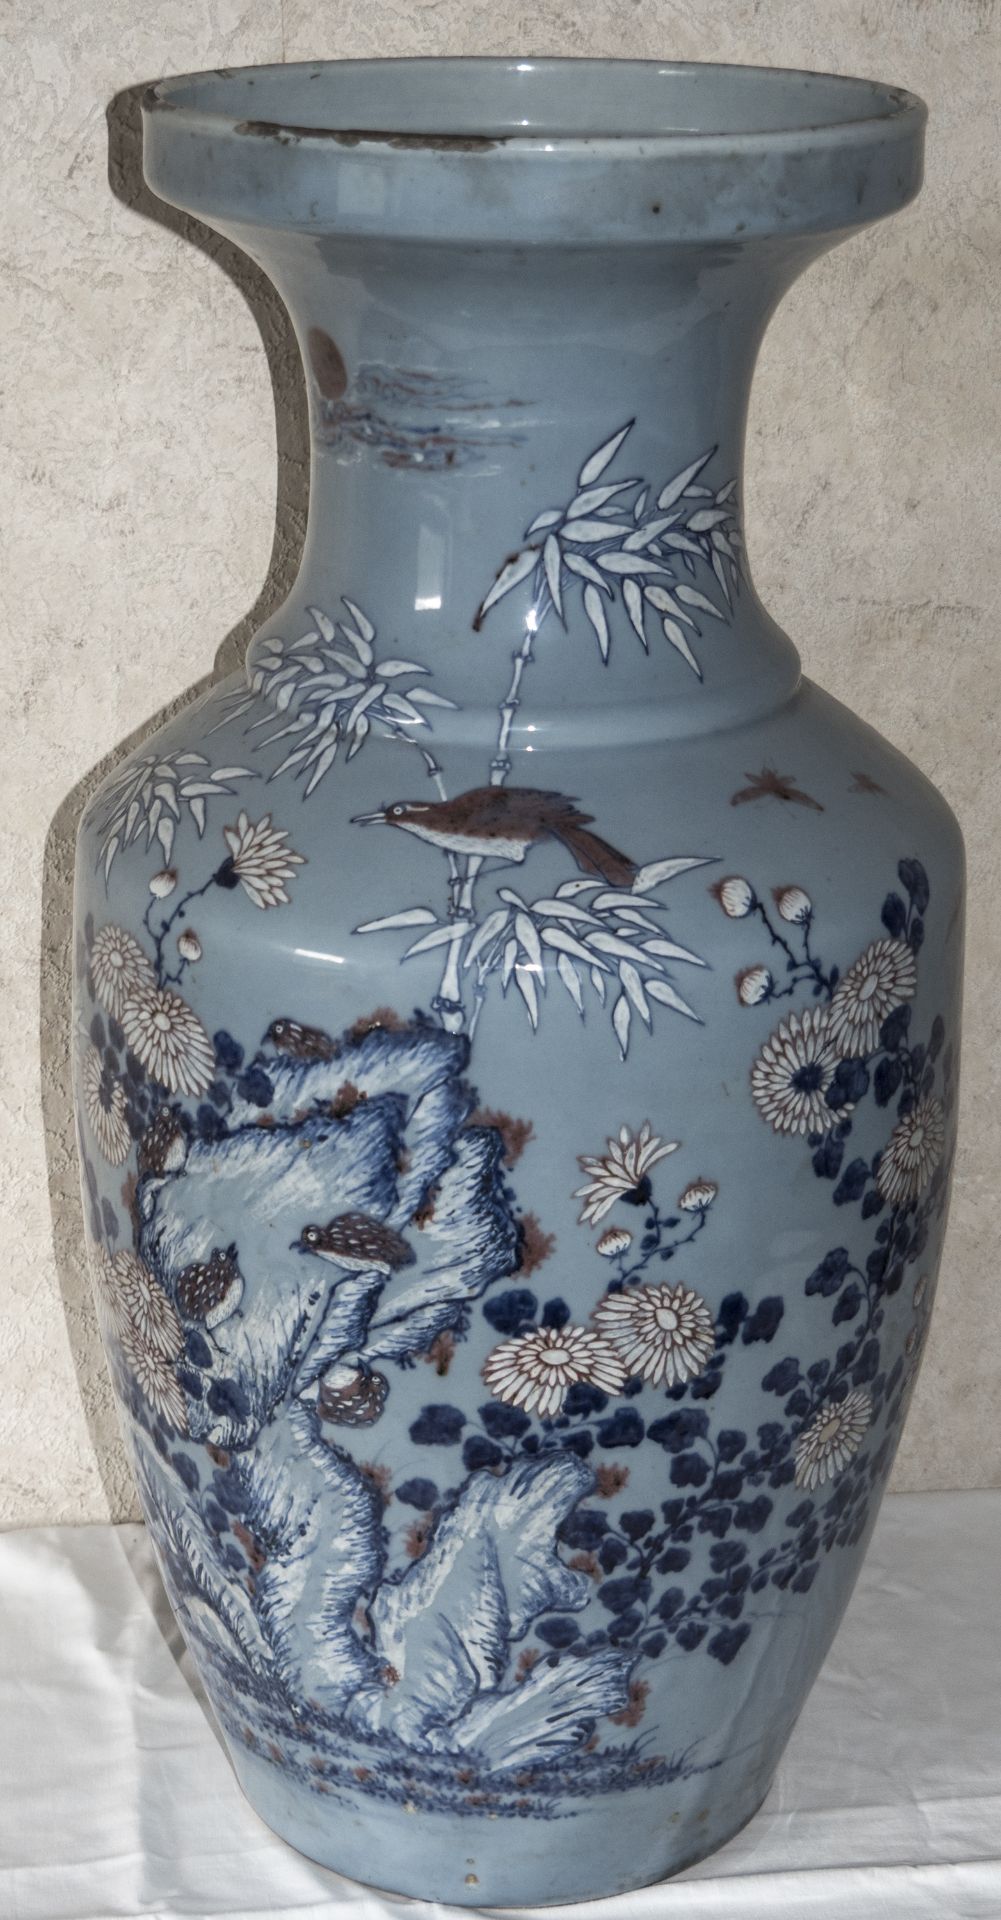 Chinesische Vase, Tao Kuang, um 1830. Blumendekor, bauchig. Höhe: ca. 70 cm. Durchmesser: ca. 36 cm.